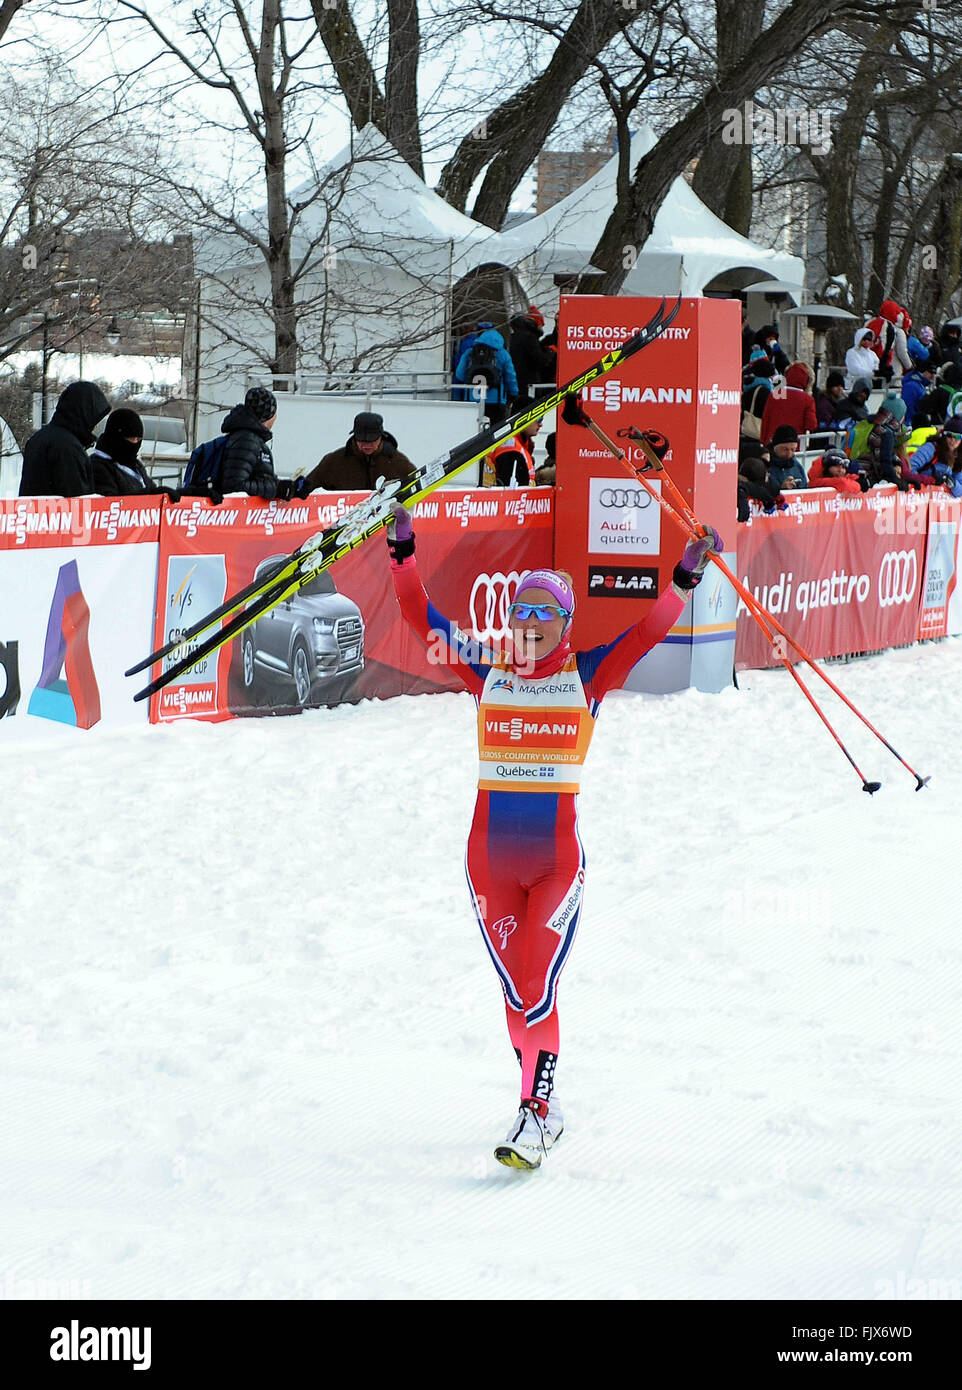 CANADA, Montreal, marzo 02.2016 Therese Johaug vincitore nella donna messa in Montréal .Tour di sci Canada 2016 Coppa del Mondo FIS. Massa 10.5 km femminile. Foto : KADRI MOHAMED / agenzia IMAGESPIC Foto Stock